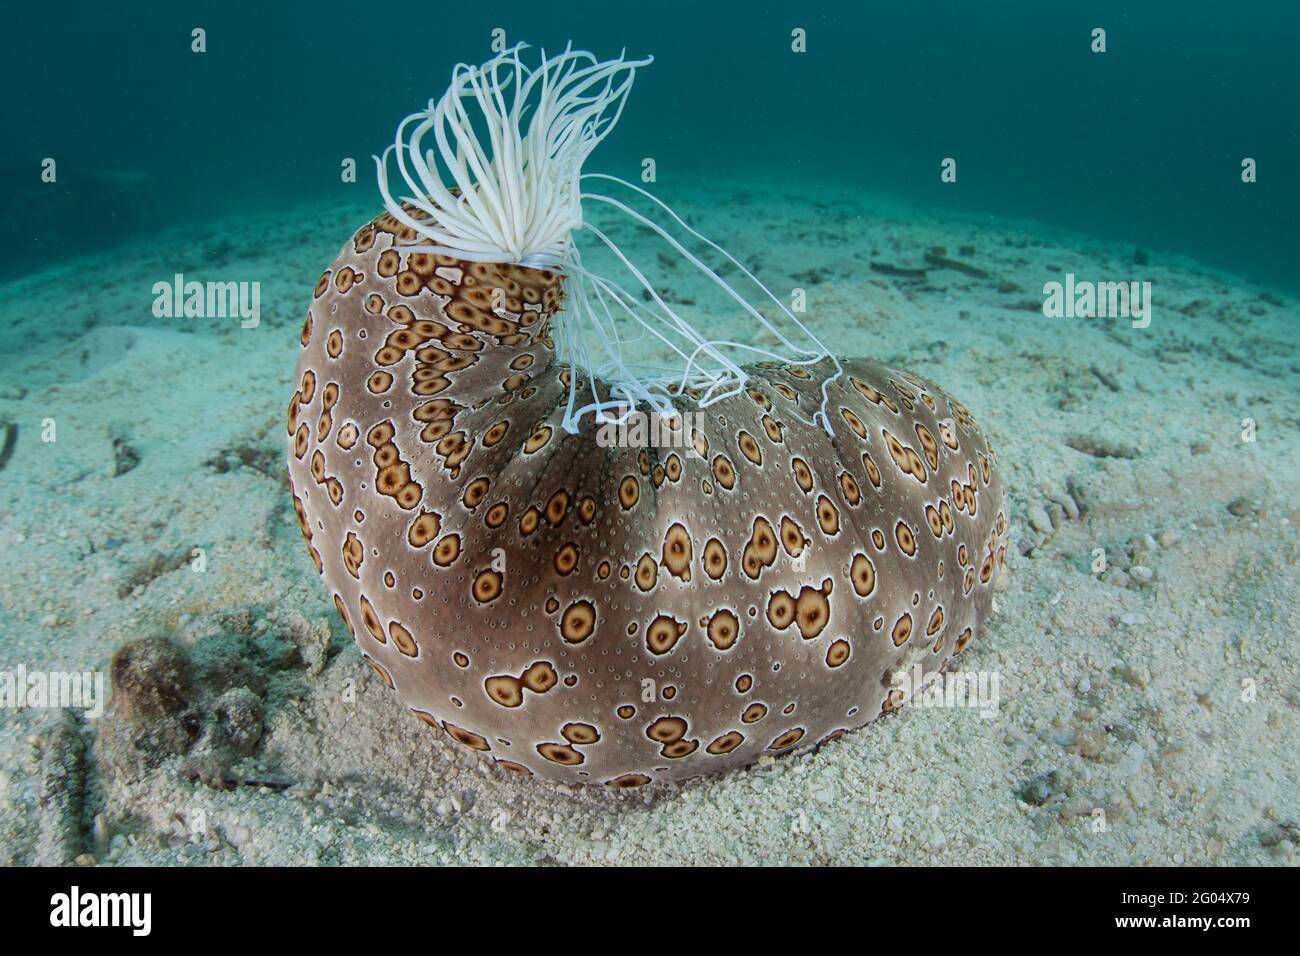 Un grande cetriolo marino, Bohadschia argus, si trova sul mare a Palau. Questo echinoderm può espellere tubuli adesivi e tossici per dissuadere i predatori. Foto Stock